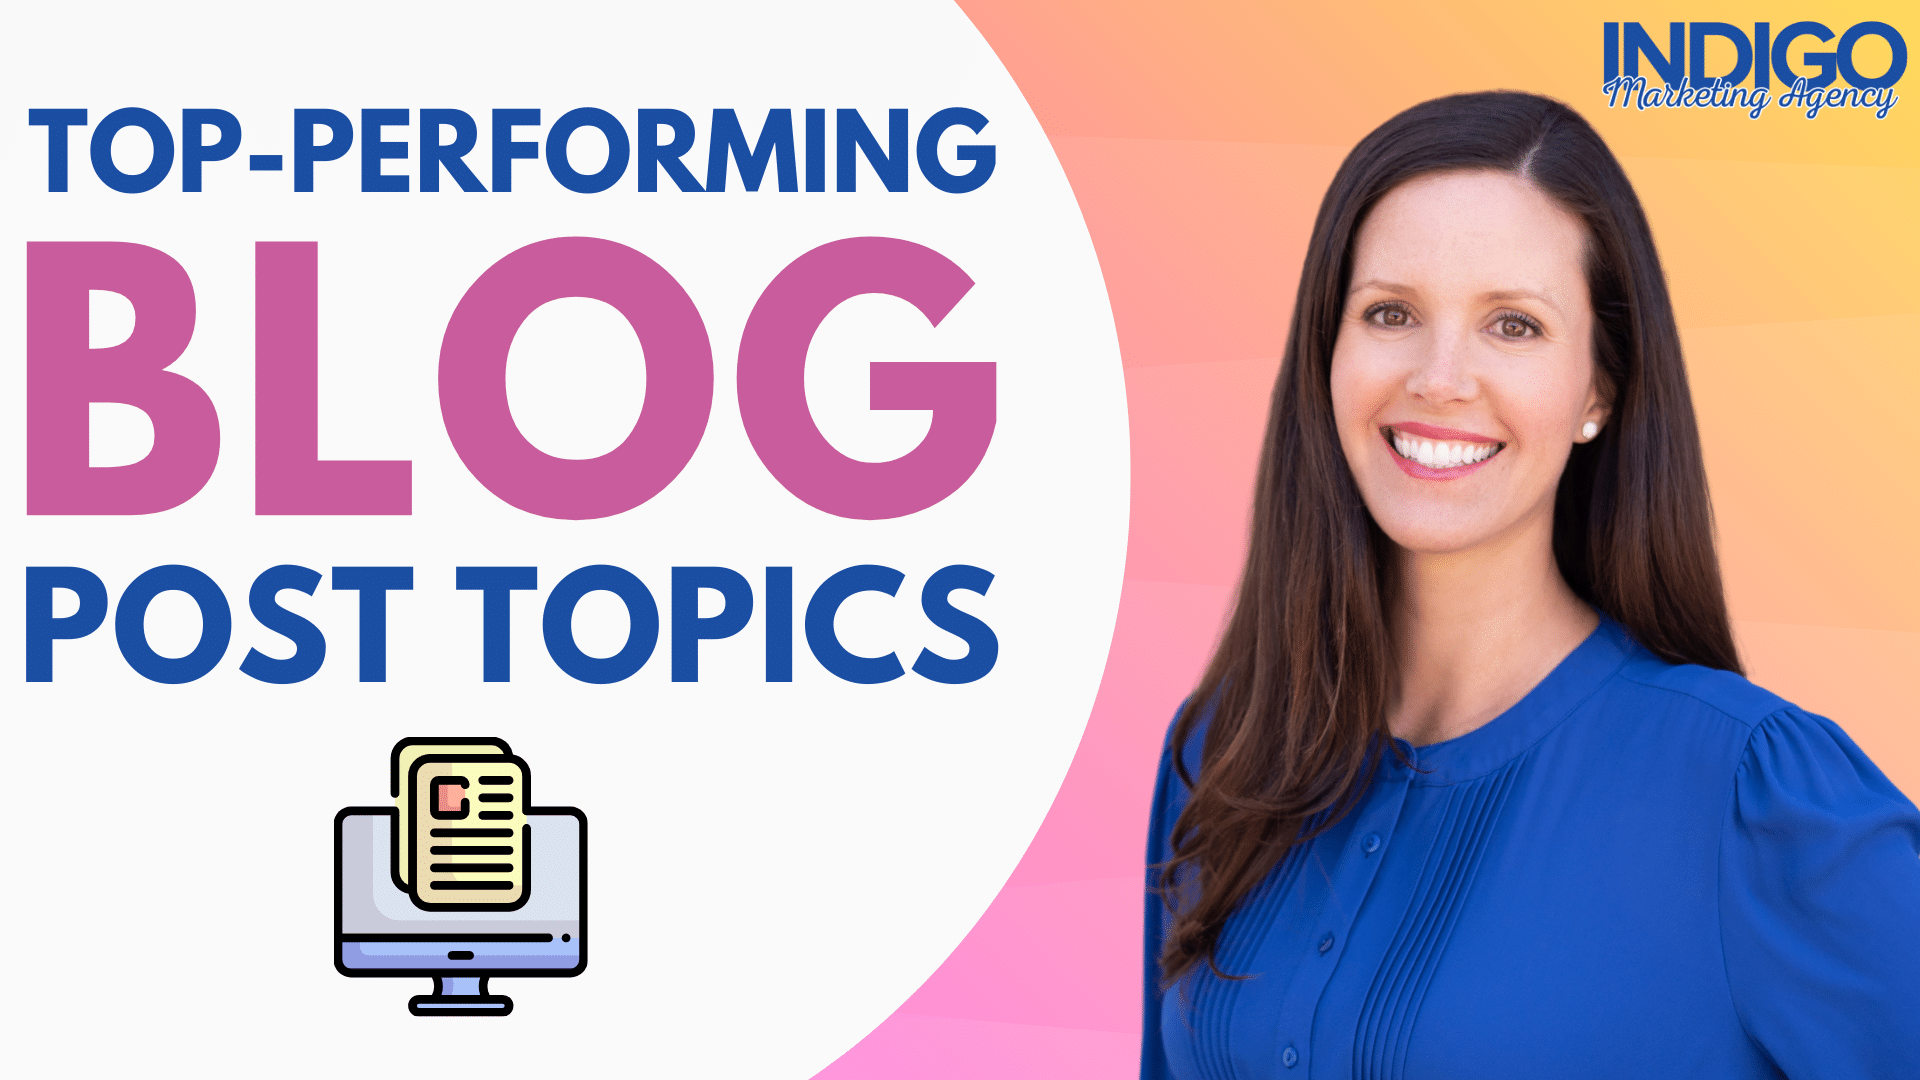 Top-performing blog post topics